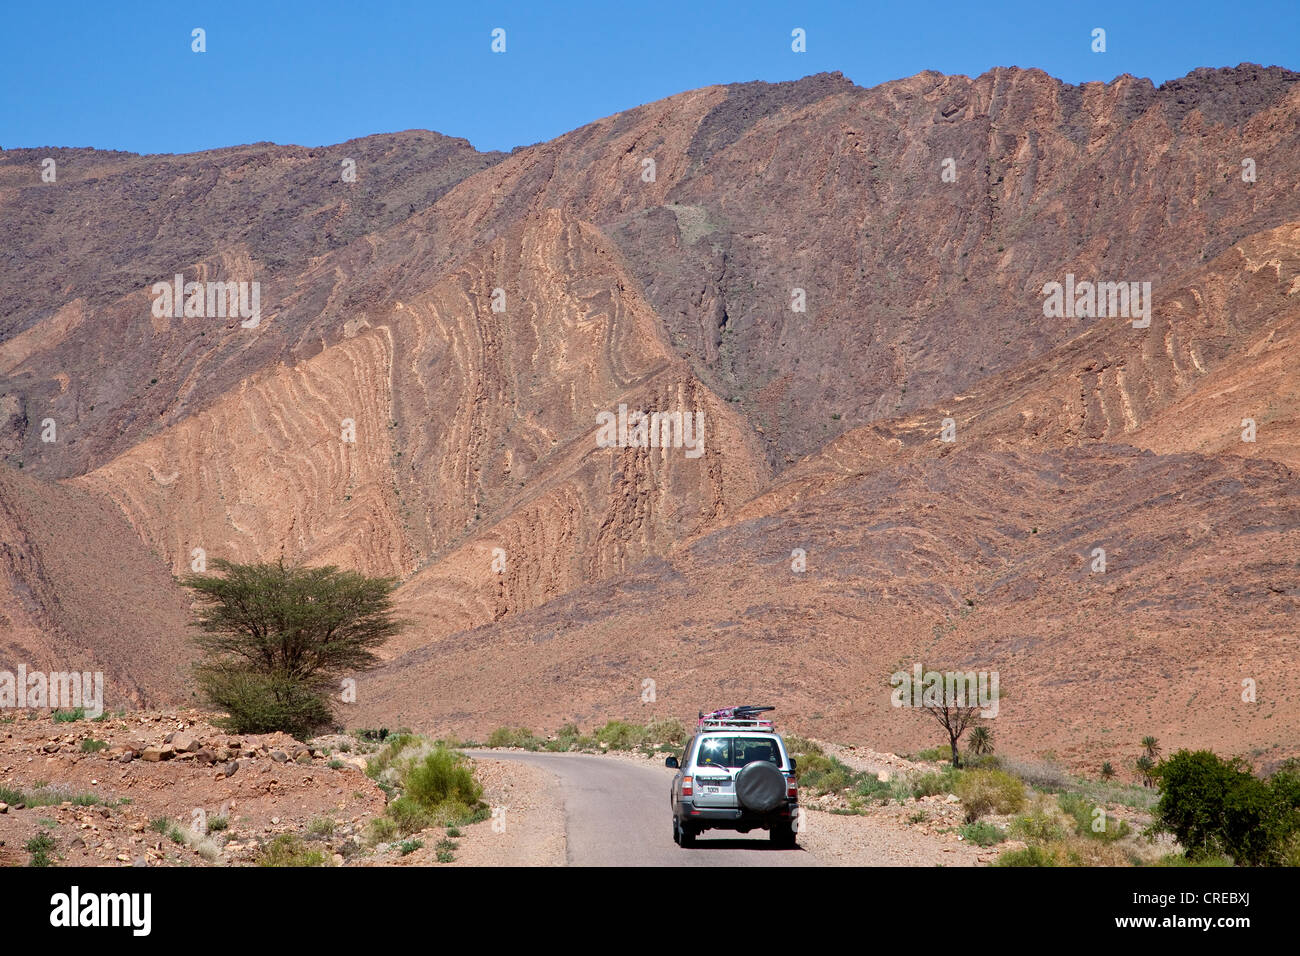 Un véhicule tout-terrain, Toyota Land Cruiser, roulant sur une route près de Foum-Zguid, Maroc, Afrique Banque D'Images